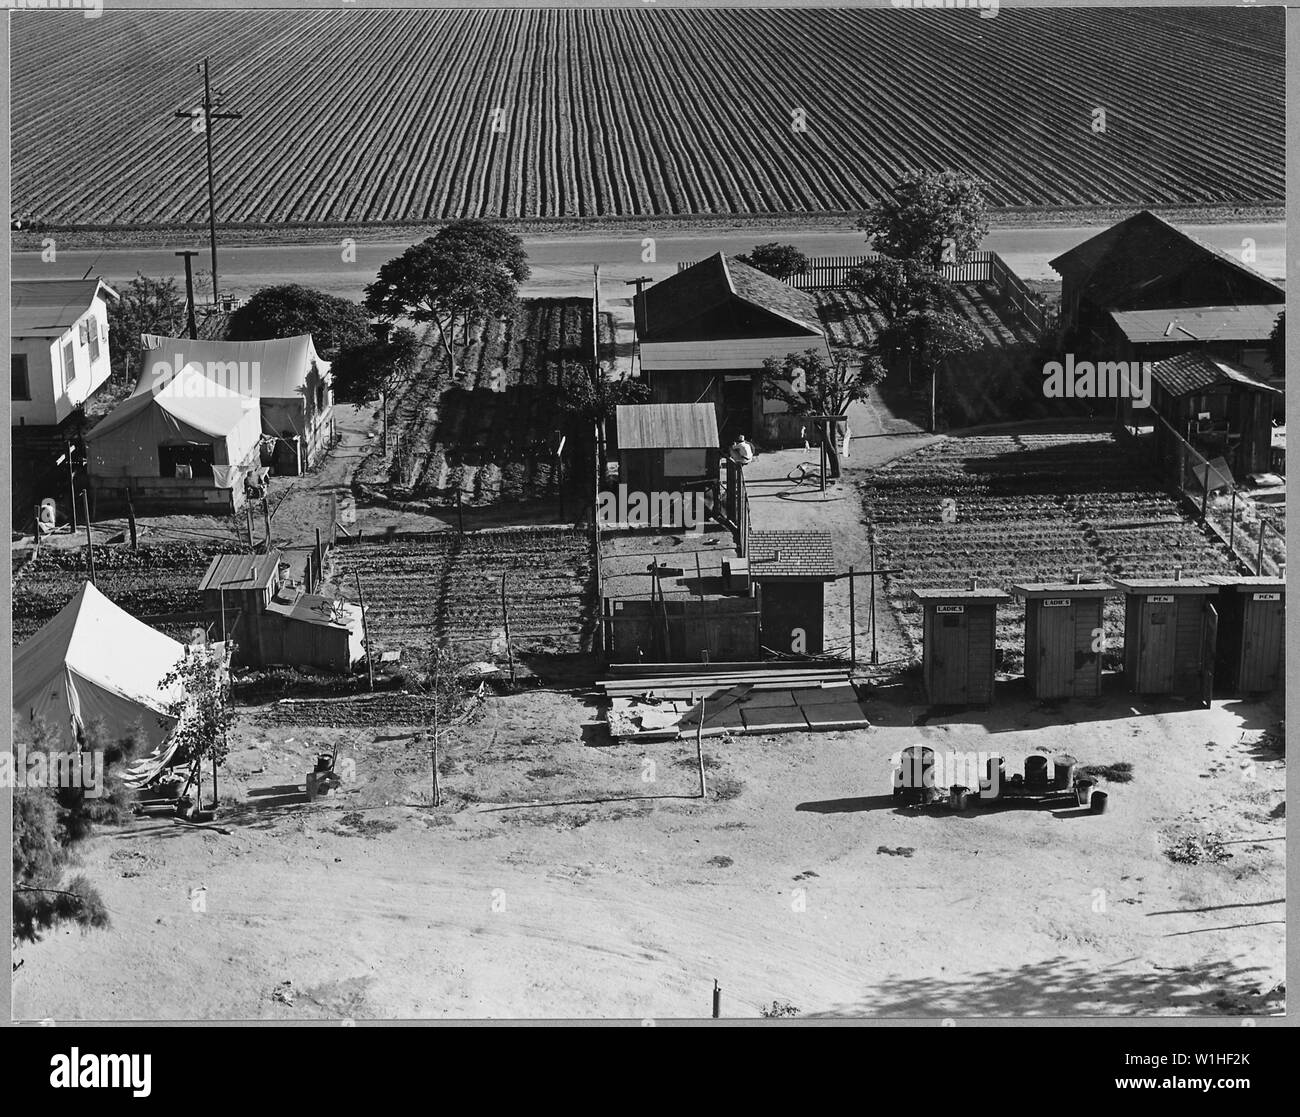 Nageslacht Fantasierijk Atlantische Oceaan Housing tents Black and White Stock Photos & Images - Alamy